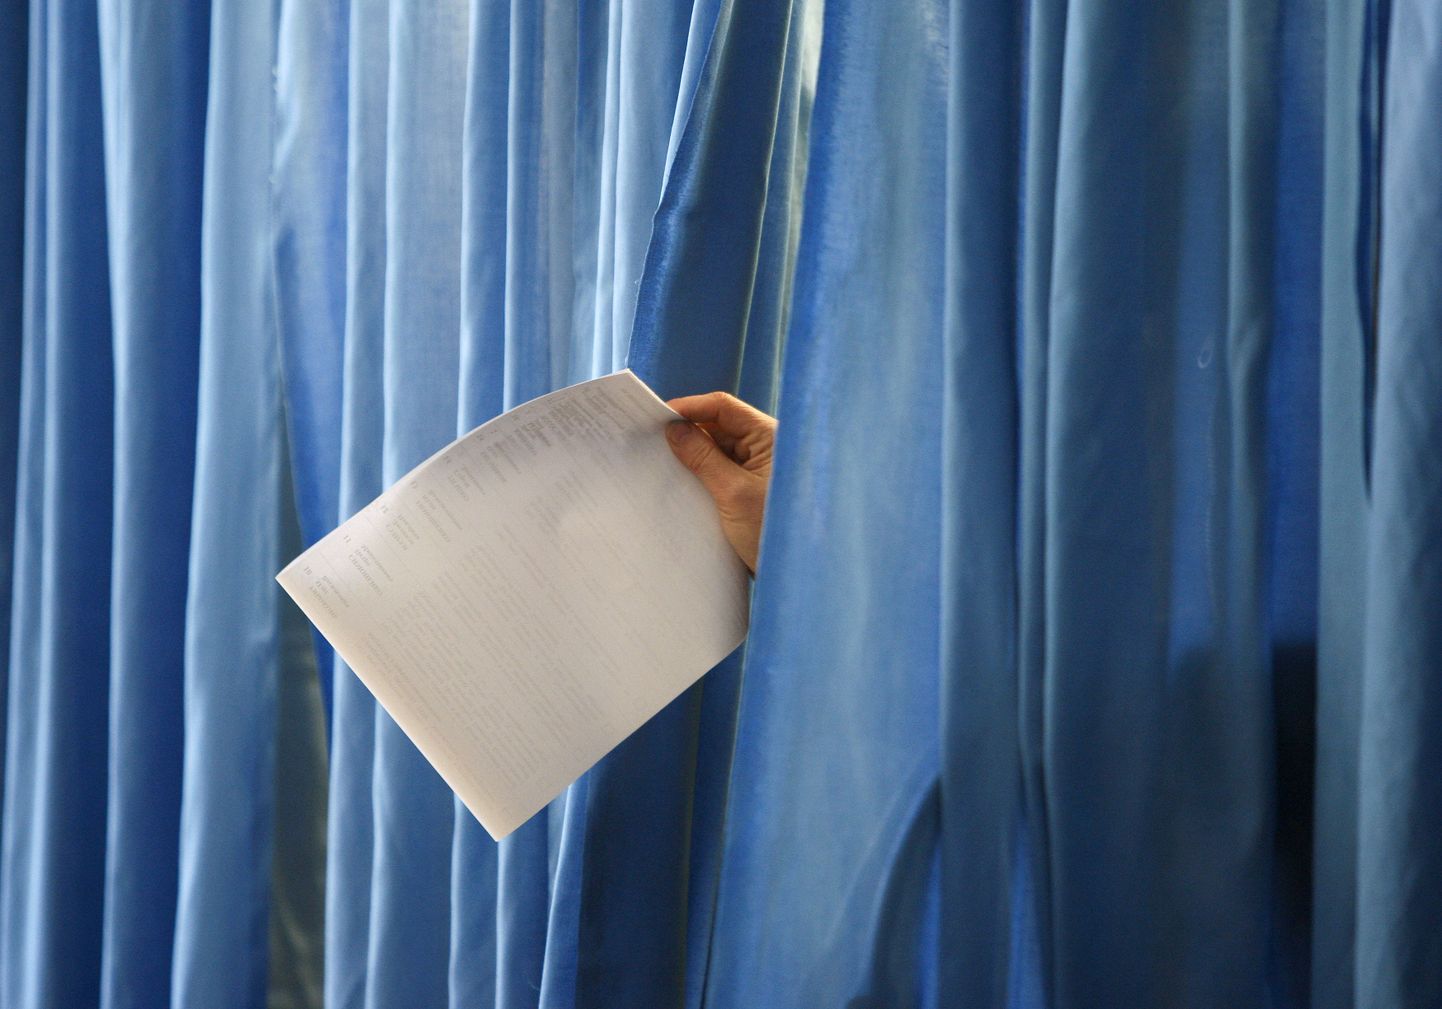 Hääletuskabiini eesriiete vahelt paistab naisterahva käsi. Pilt on tehtud Dnipropetrovskis.